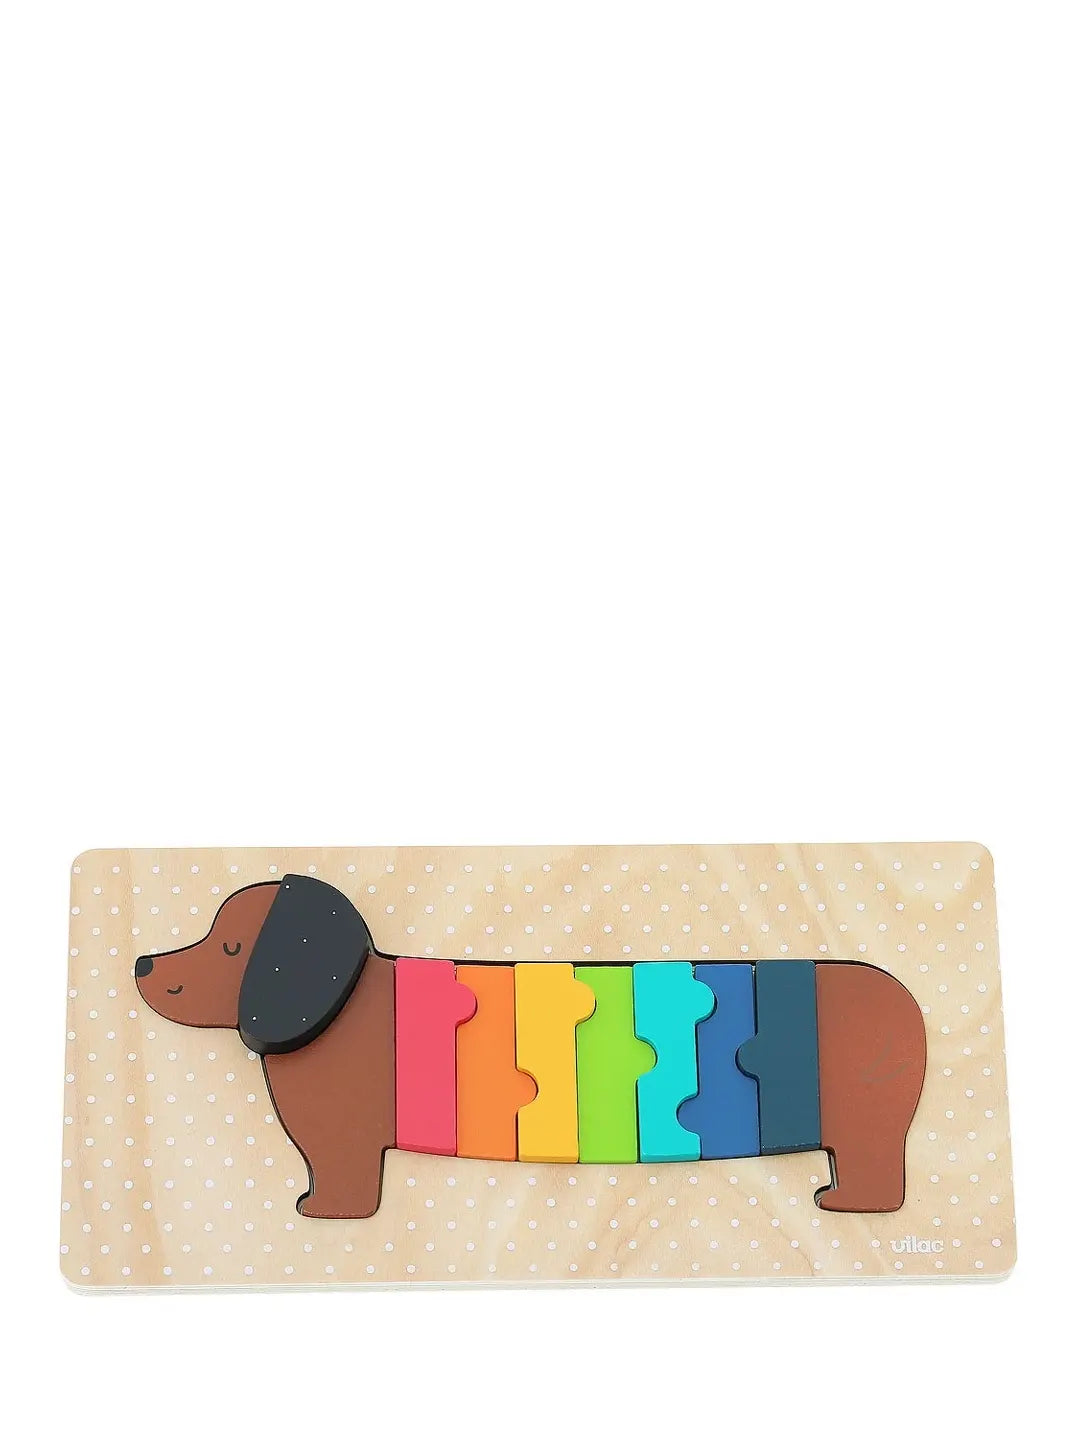 Dog wooden puzzle (11 pcs)